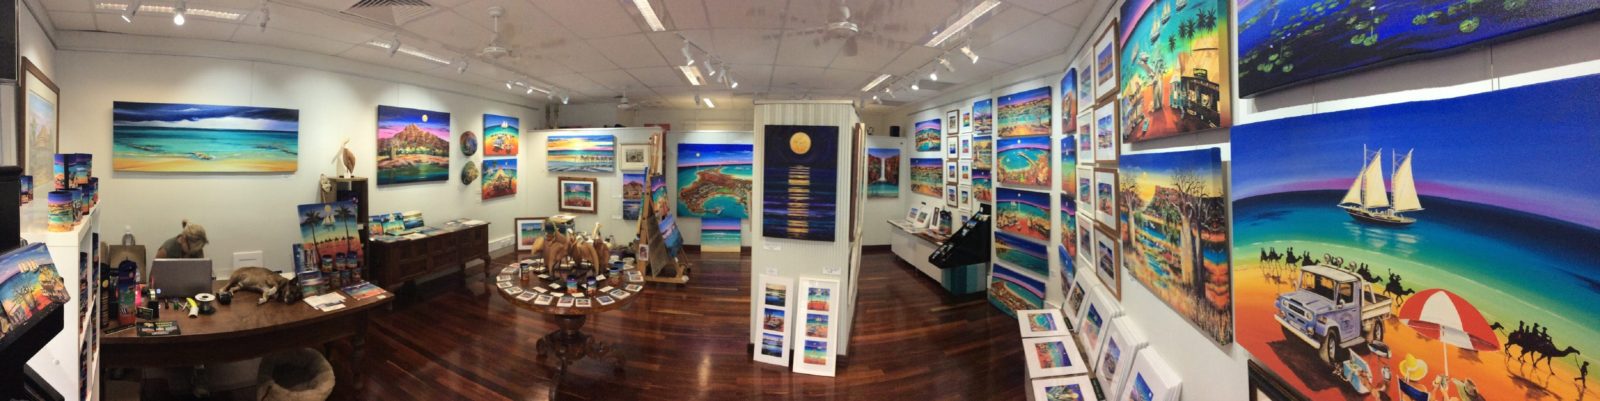 Broome Gallery, Broome, Western Australia